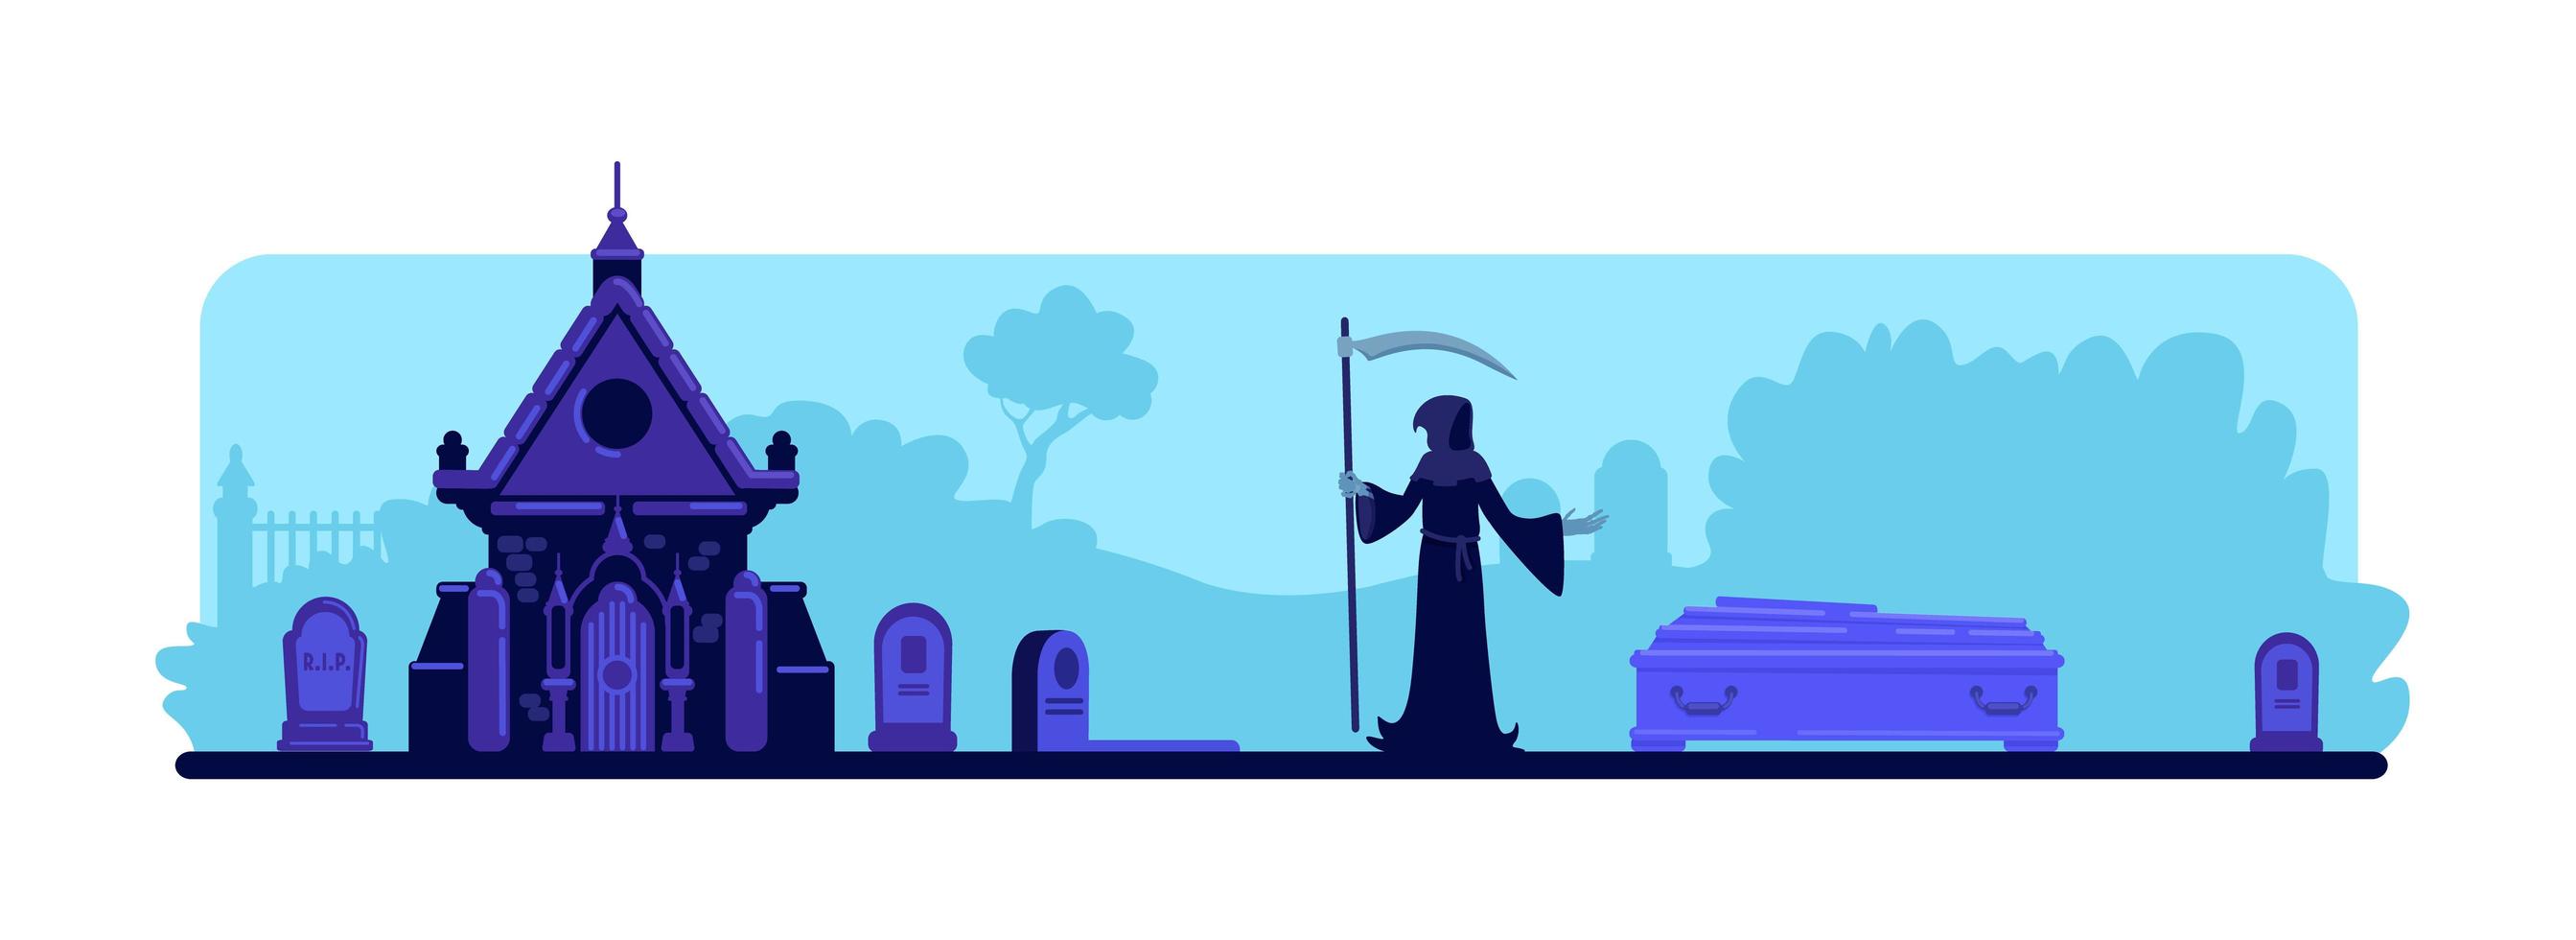 Grim Reaper au cimetière vecteur